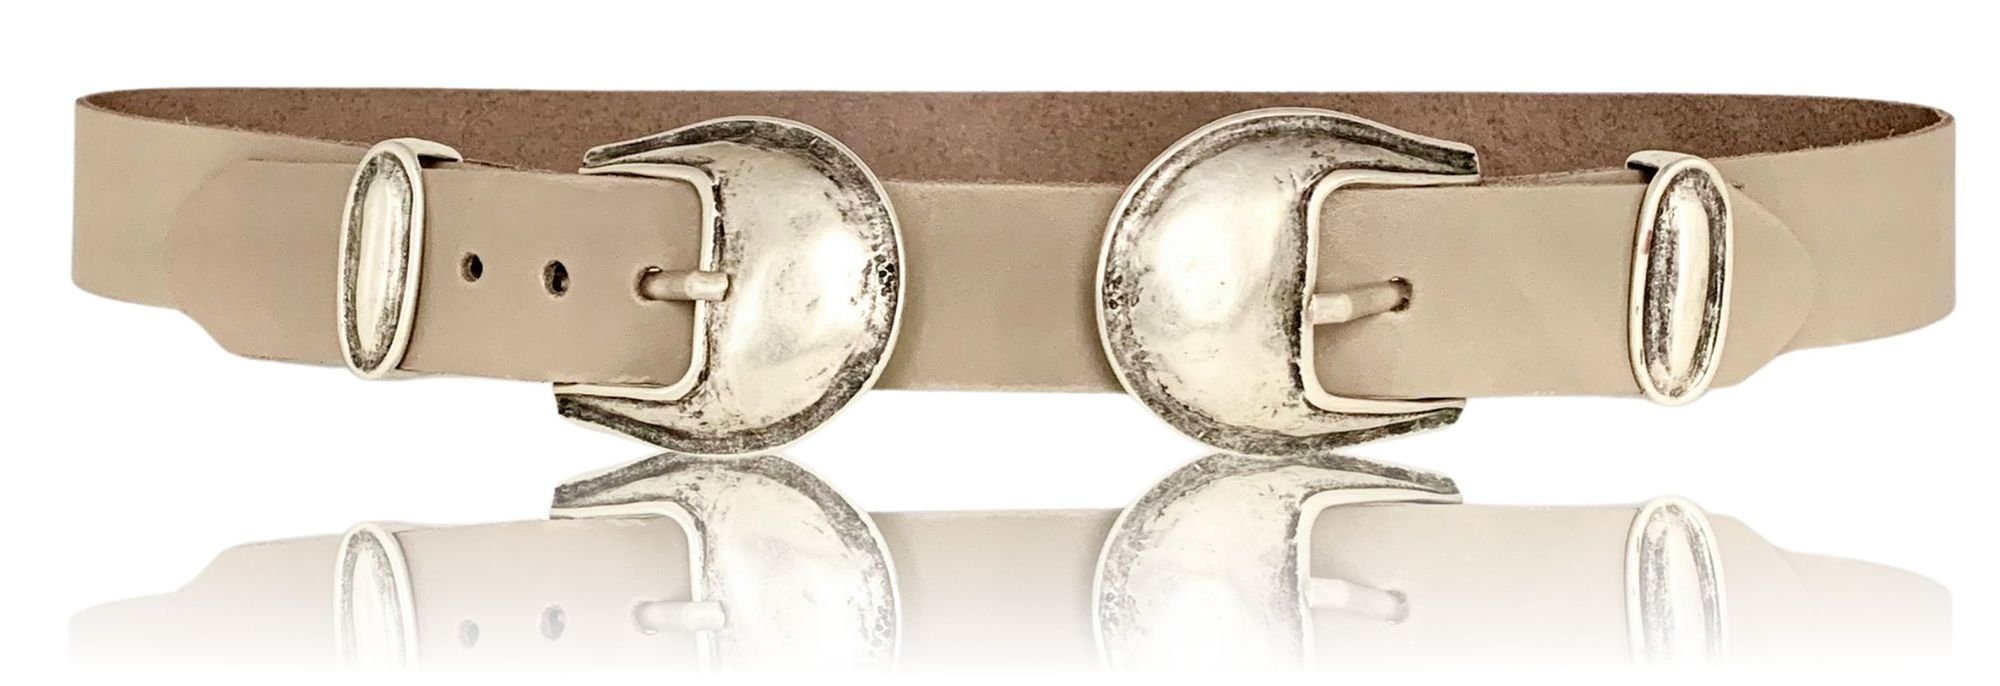 FRONHOFER Hüftgürtel 18689 Doppelschließe 3,5 cm Damengürtel, echt Ledergürtel mit 2 Schnallen Taupe